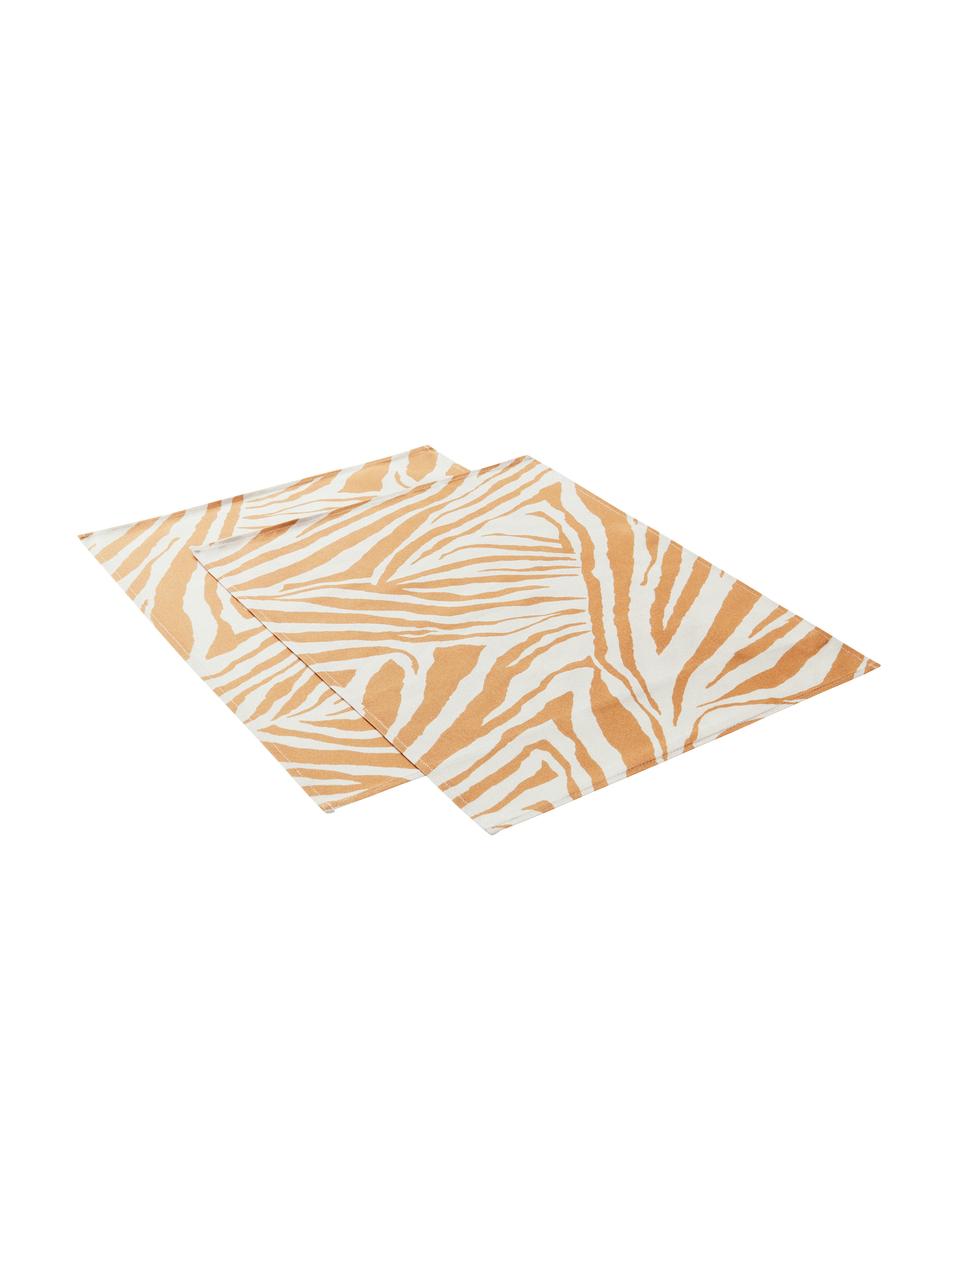 Bavlněné prostírání se vzorem zebry Zadie, 2 ks, 100 % bavlna, Hořčičná žlutá, krémově bílá, Š 35 cm, D 45 cm